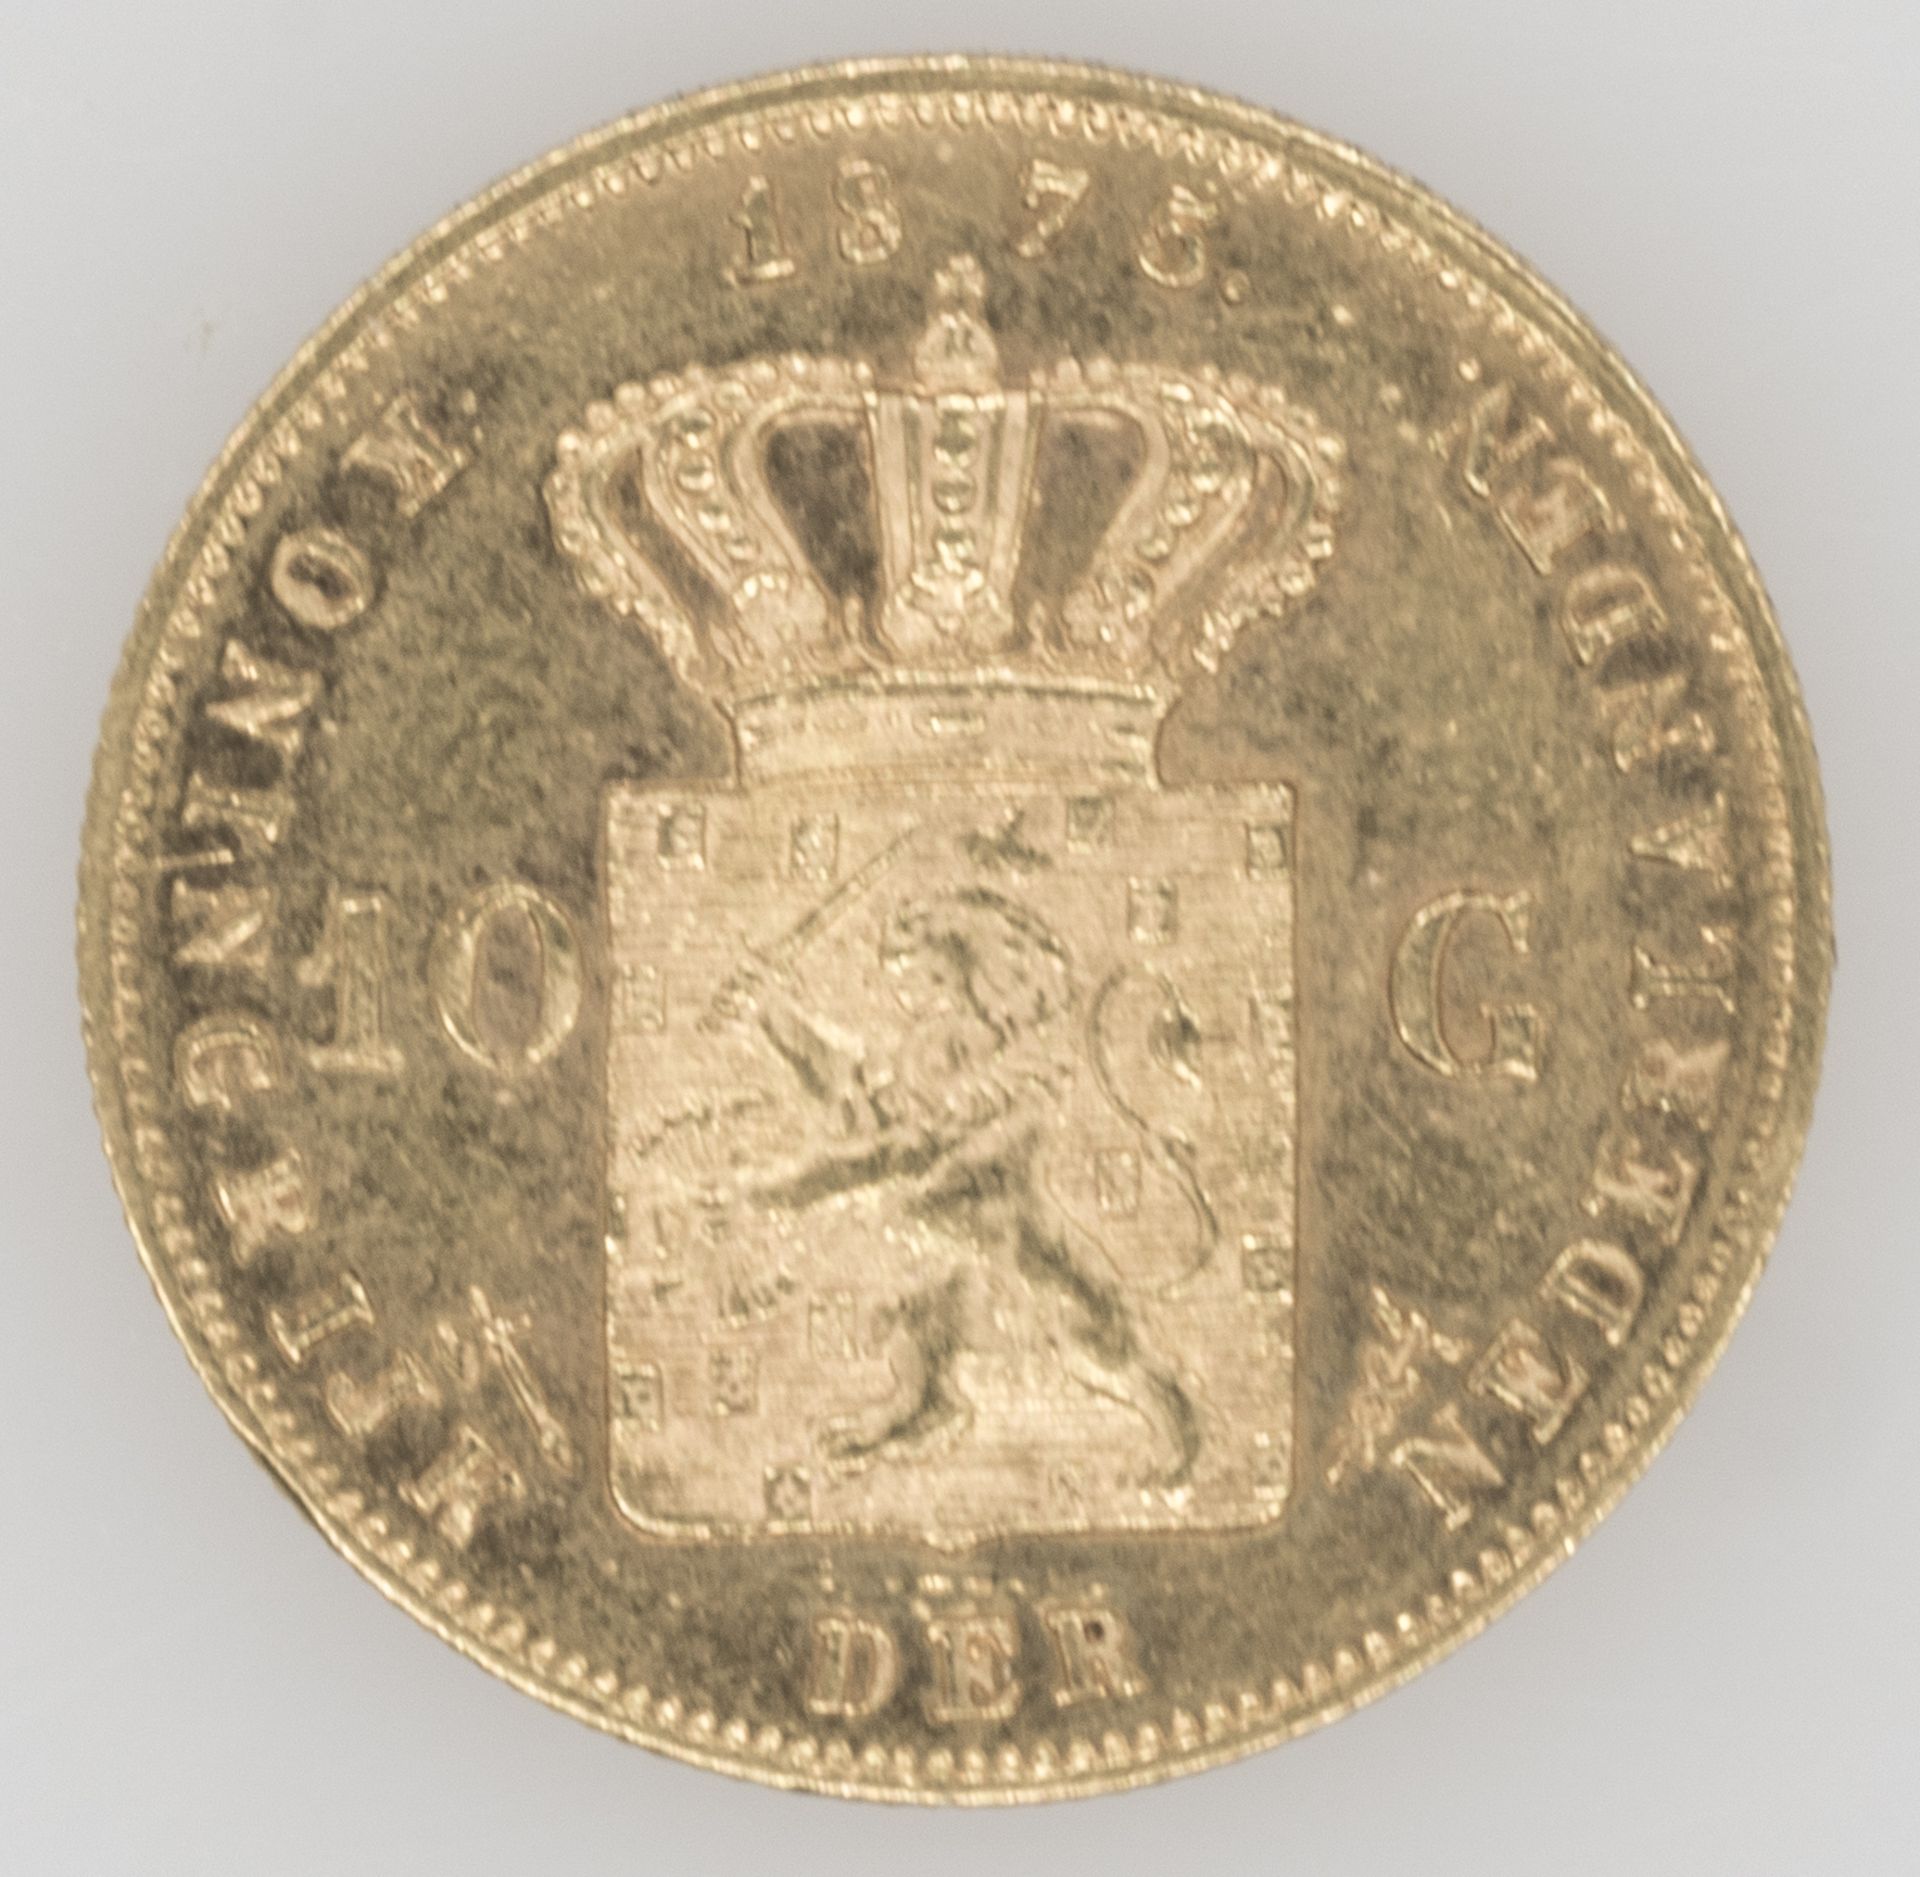 Niederlande 1875 - 1887, 10 Gulden - Goldmünze "Wilhelm III.". Gold 900/1000. Gewicht: ca. 6,7 g. - Image 2 of 3